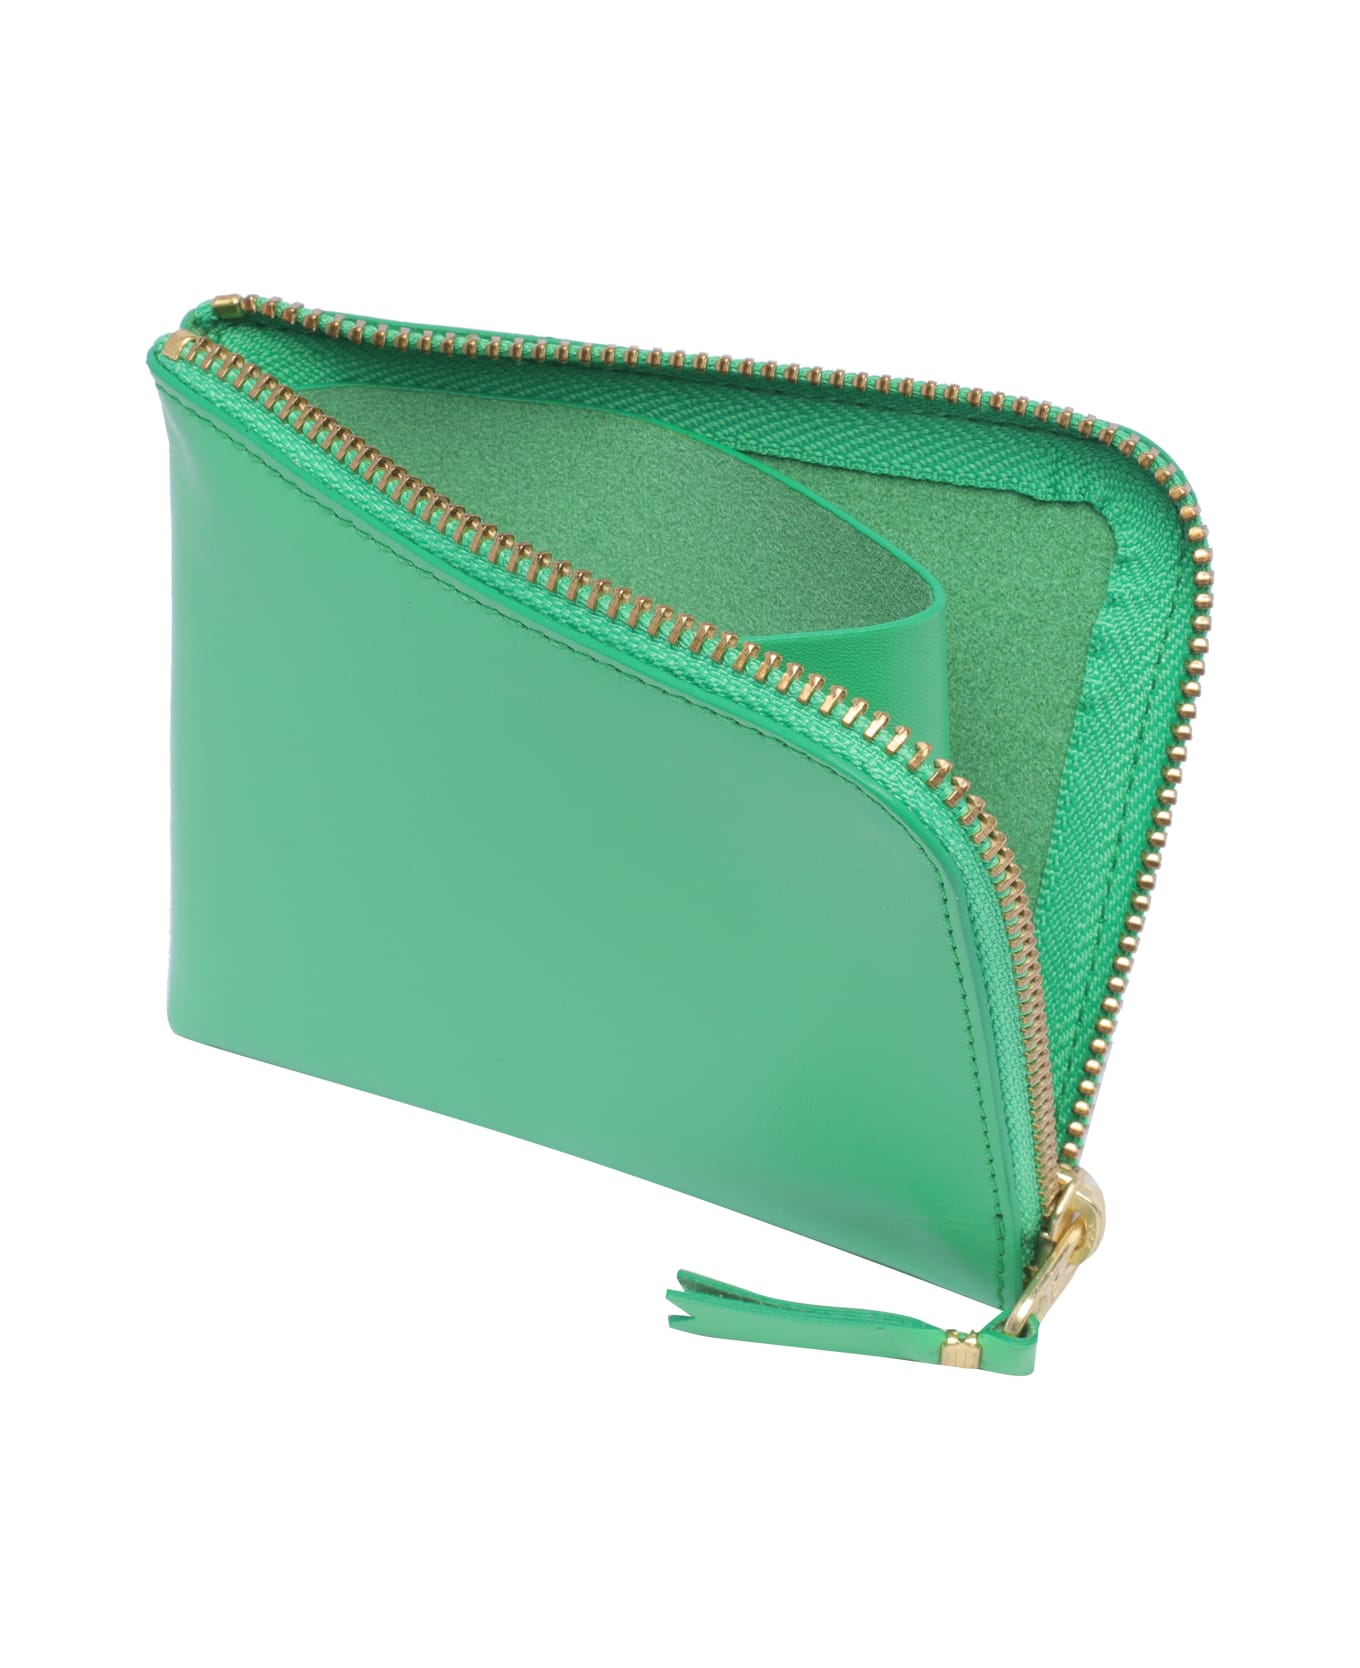 Comme des Garçons Wallet Classic Leather Line Wallet - Green 財布